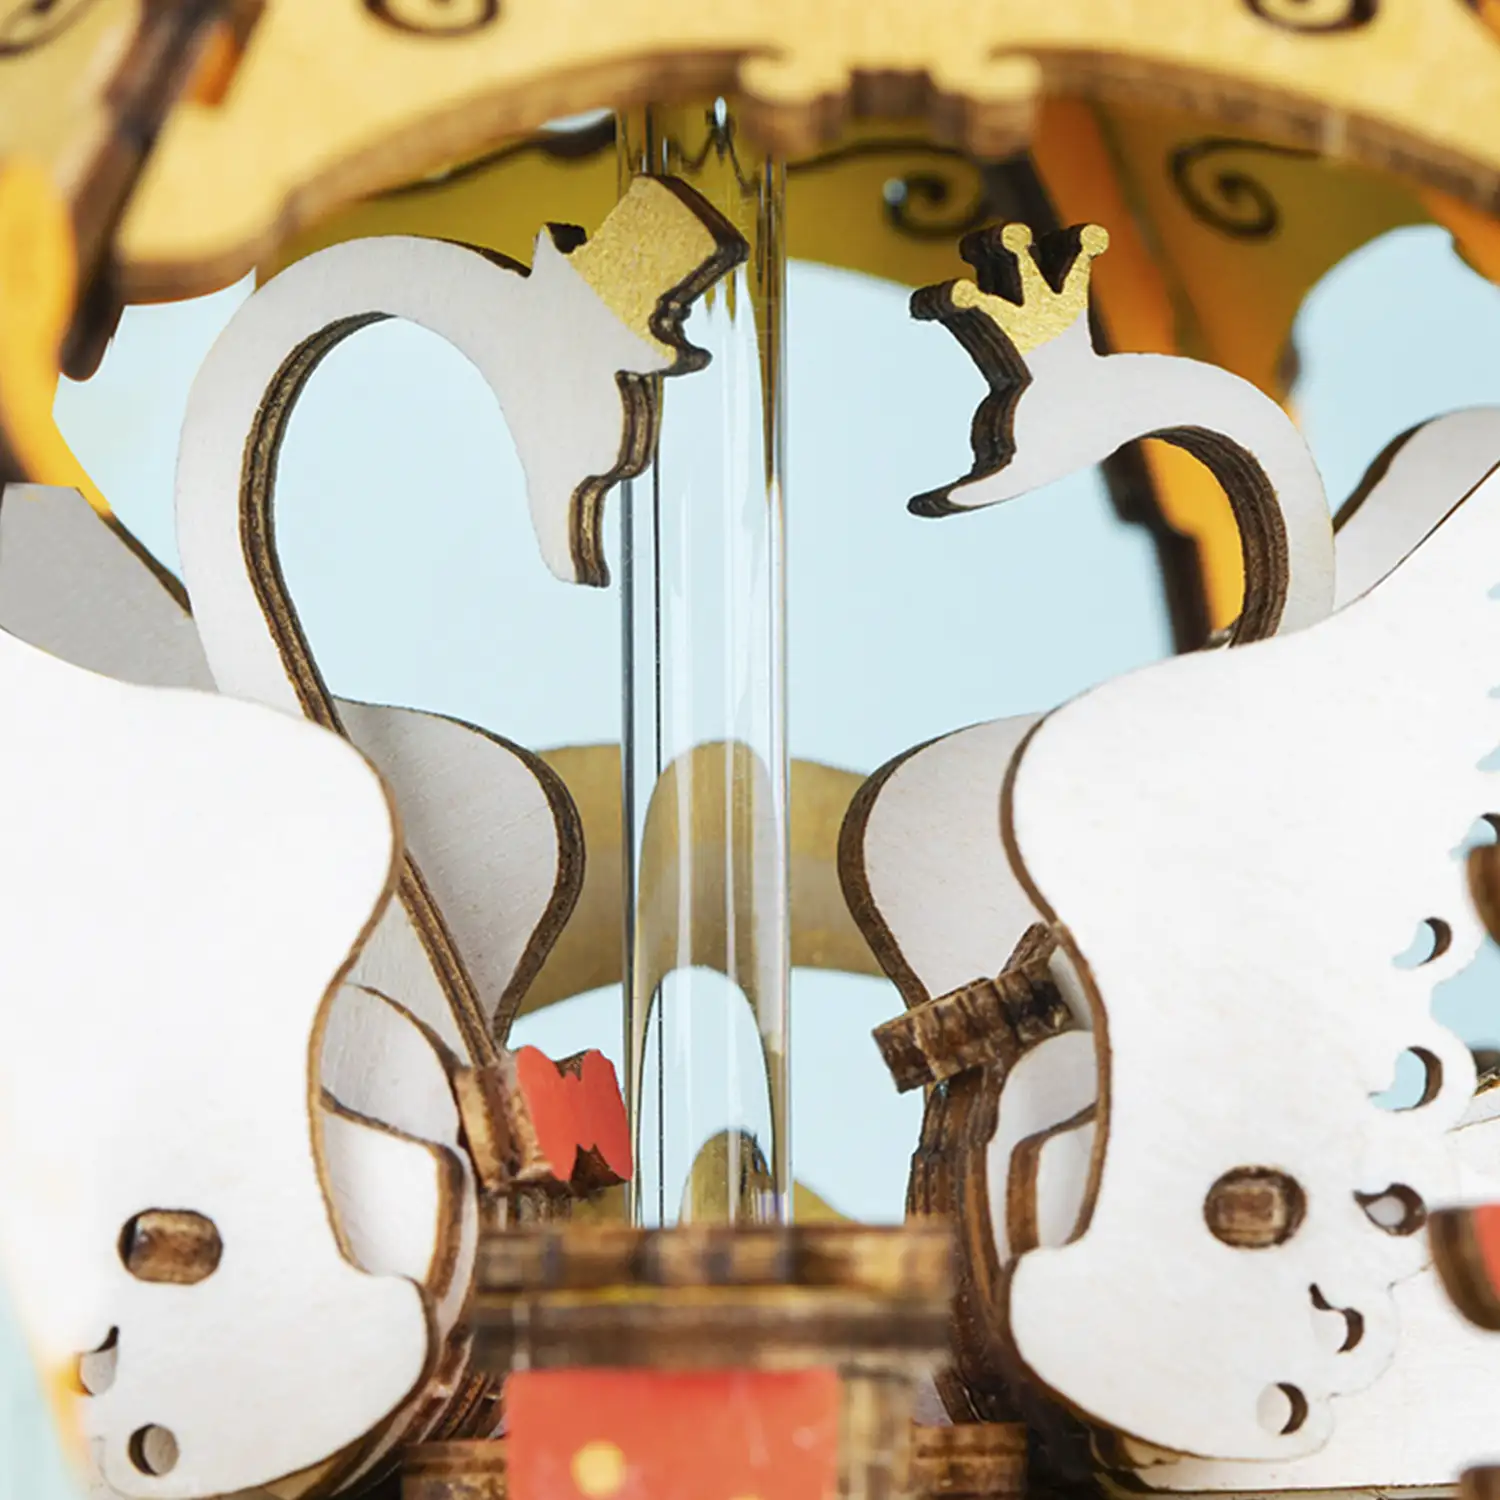 Caja de música Carro de calabaza. Maqueta 3D realista con gran detalle, 165 piezas